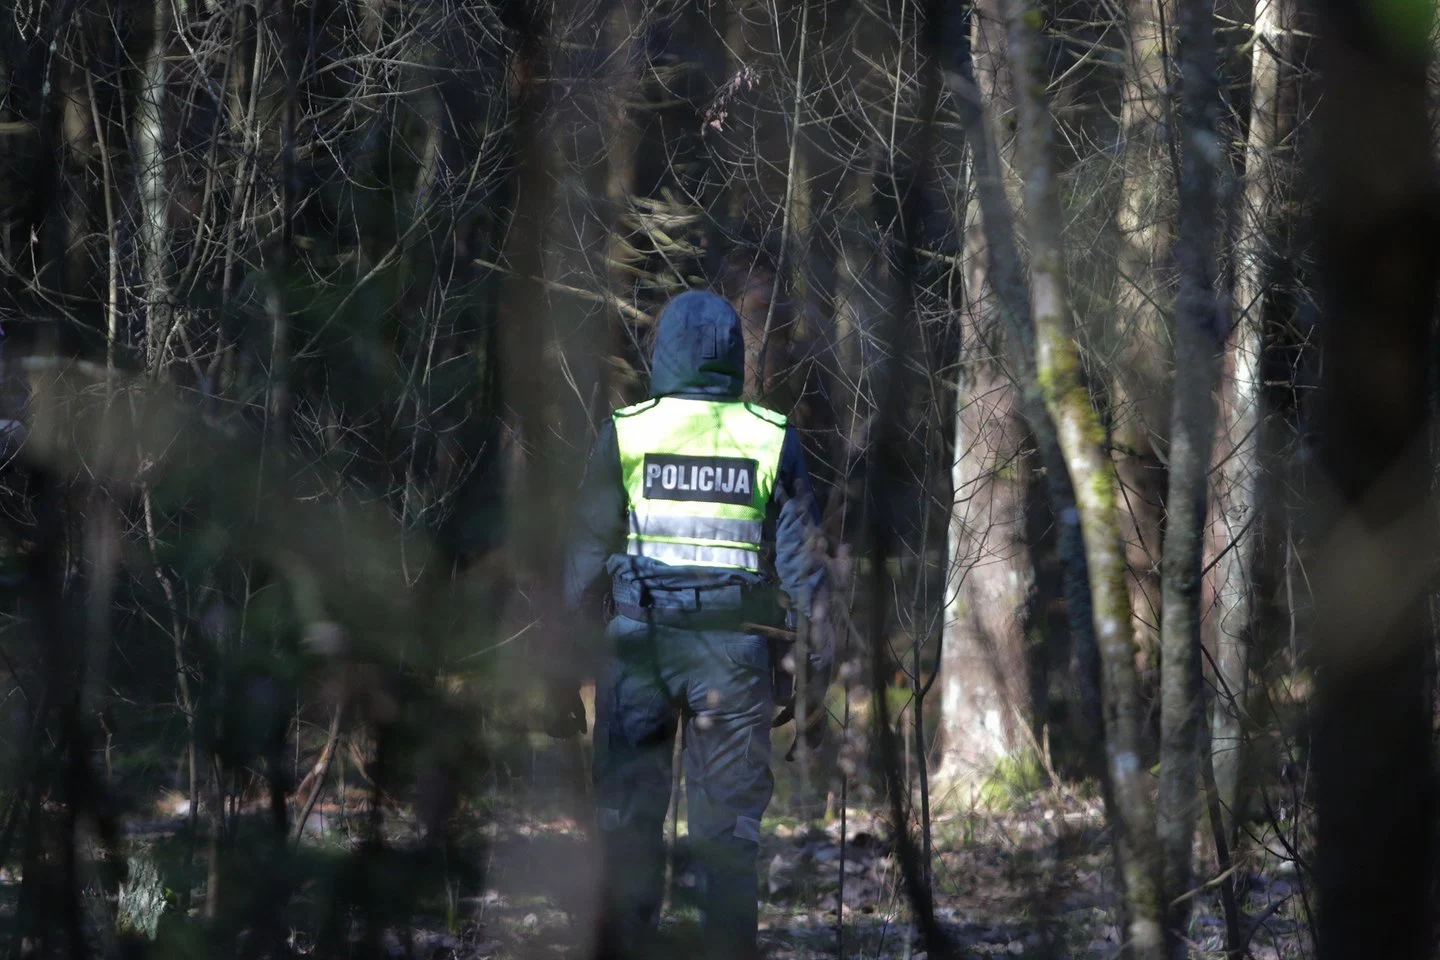 Įsiutęs buvęs policininkas dukters skriaudiką nutarė žiauriai pamokyti nuvežęs į mišką